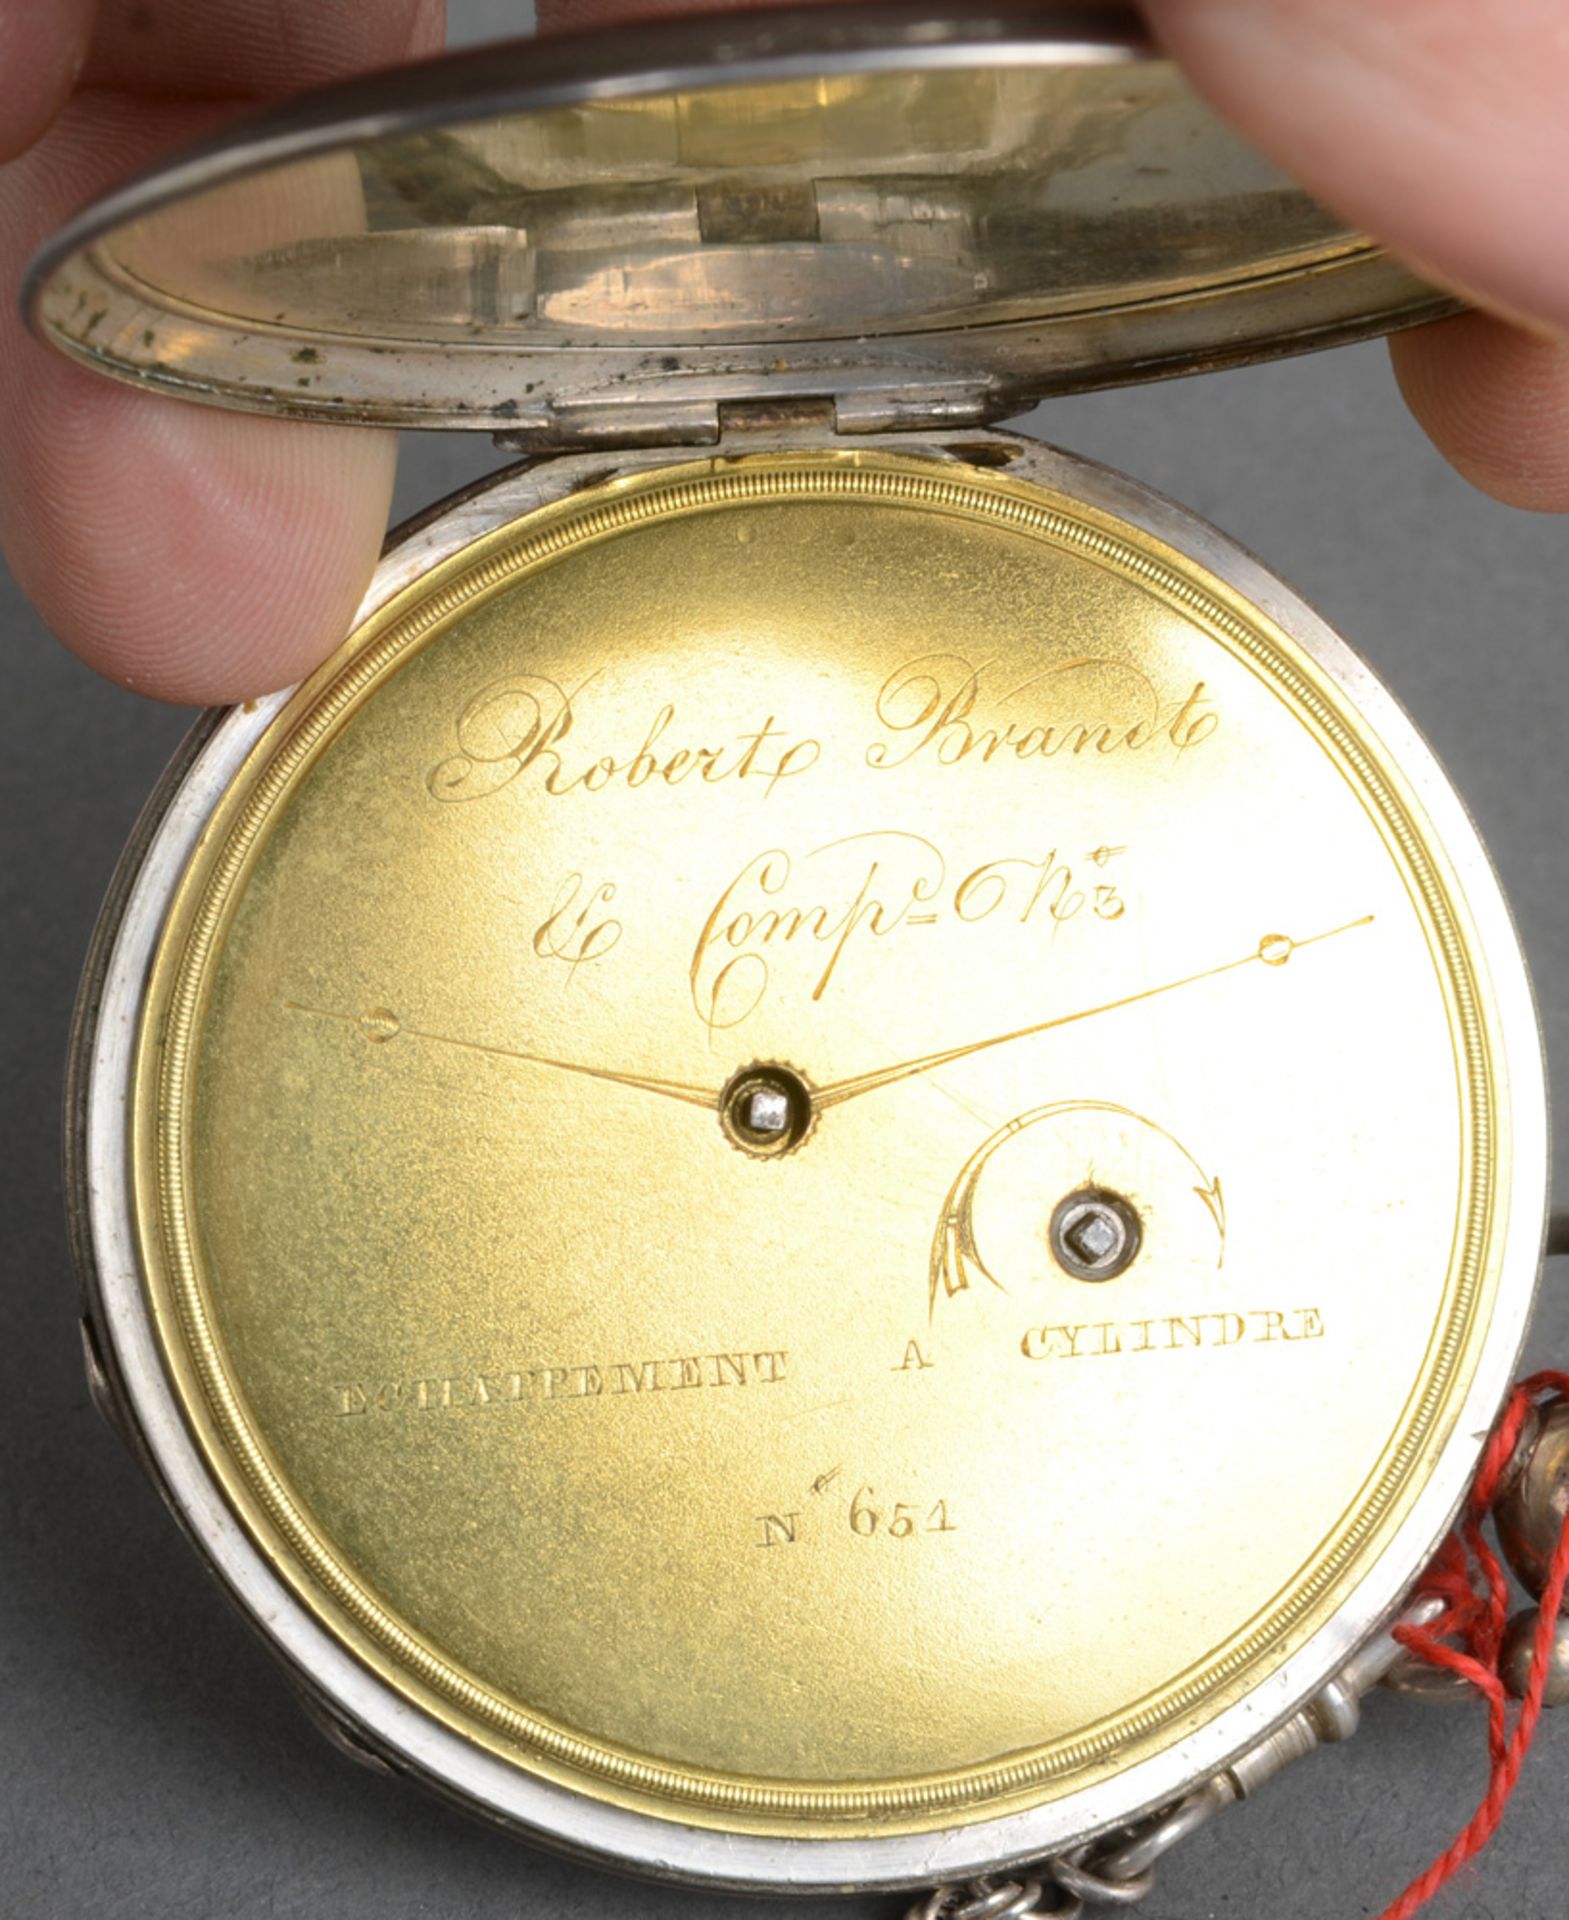 Taschenuhr, Marke „Robert Brandt“, mit Silbergehäuse und doppeltem Schlüsselaufzug; dazu silberne - Image 2 of 2